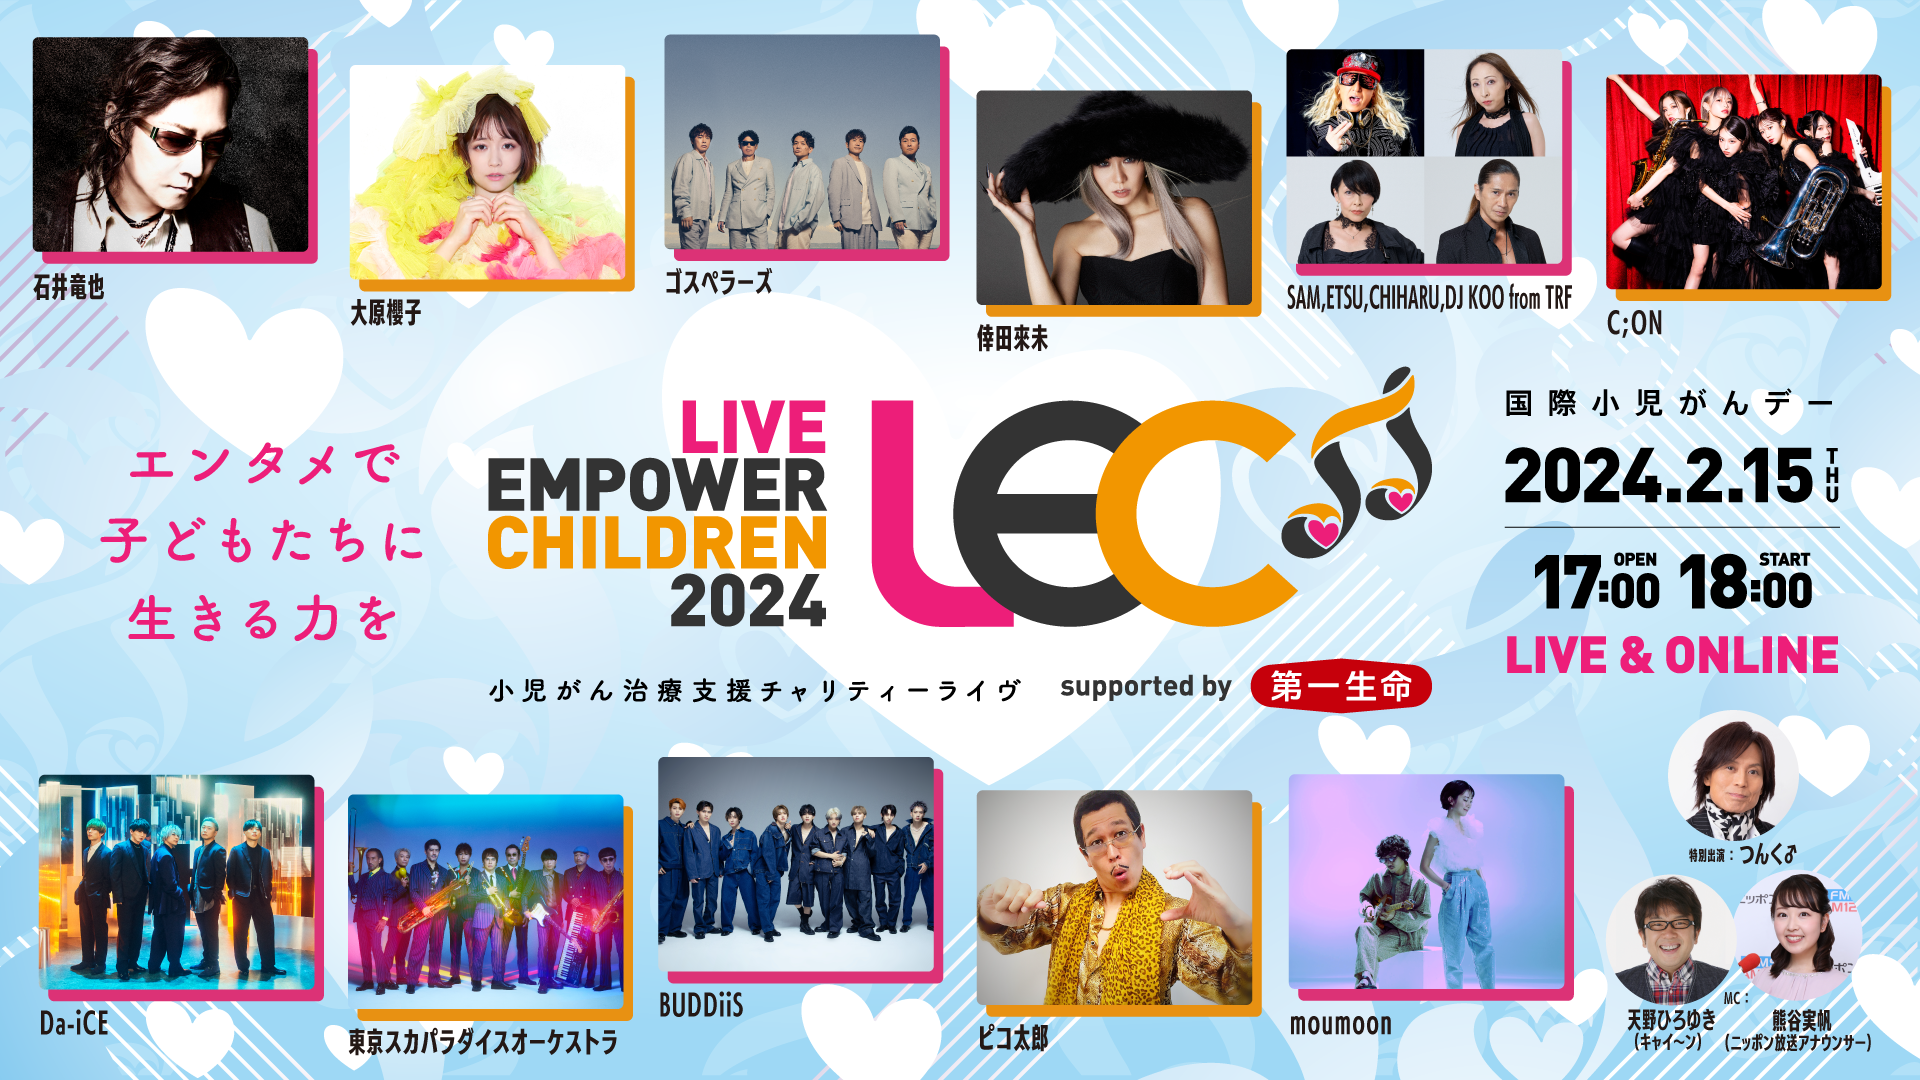 LIVE EMPOWER CHILDREN 2024 supported by 第一生命保険（東京公演）